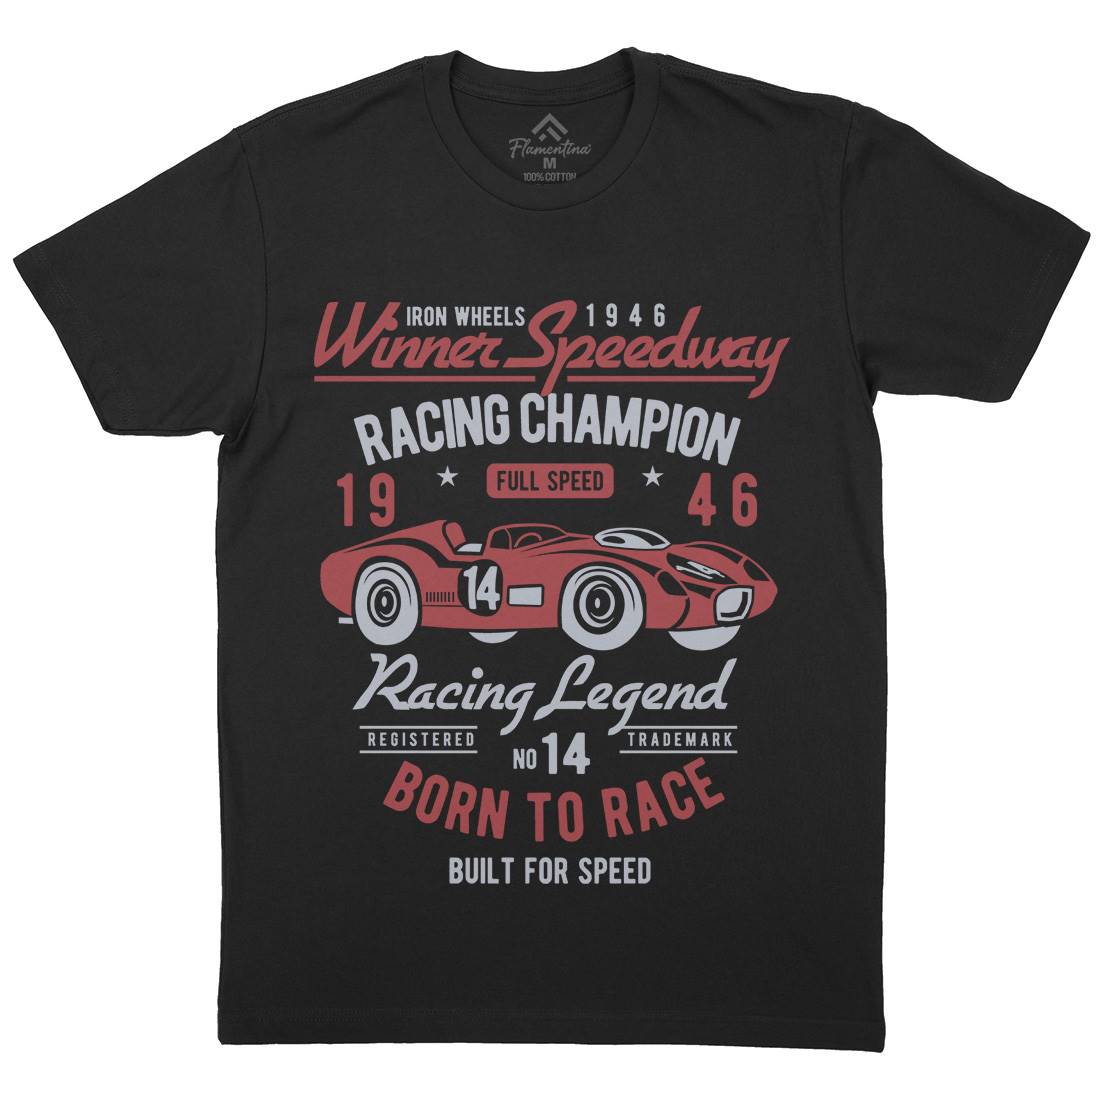 Winner Speedway Mens Crew Neck T-Shirt Cars B476